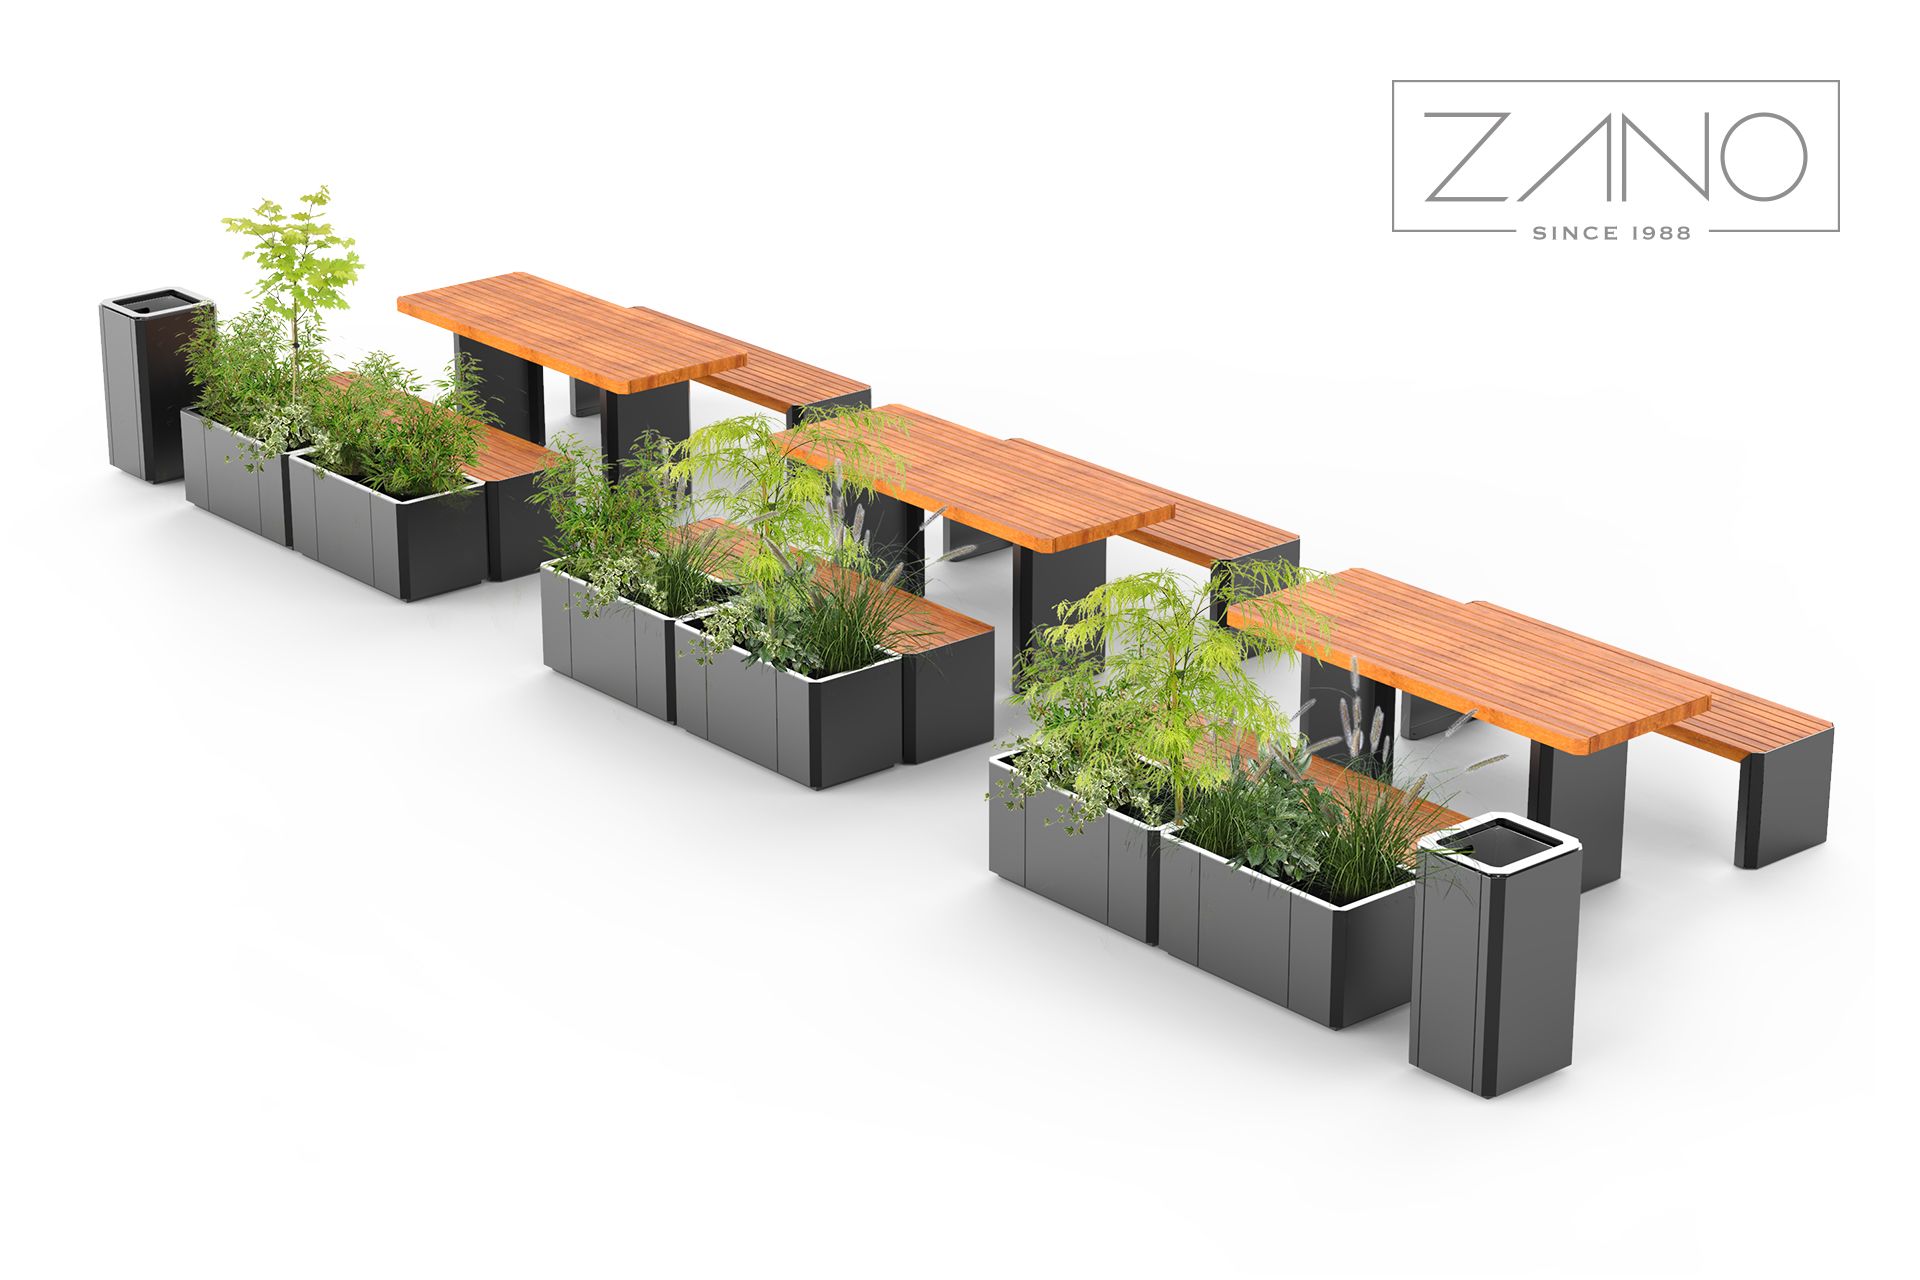 Stilo - bancos y jardineras de ZANO mobiliario urbano